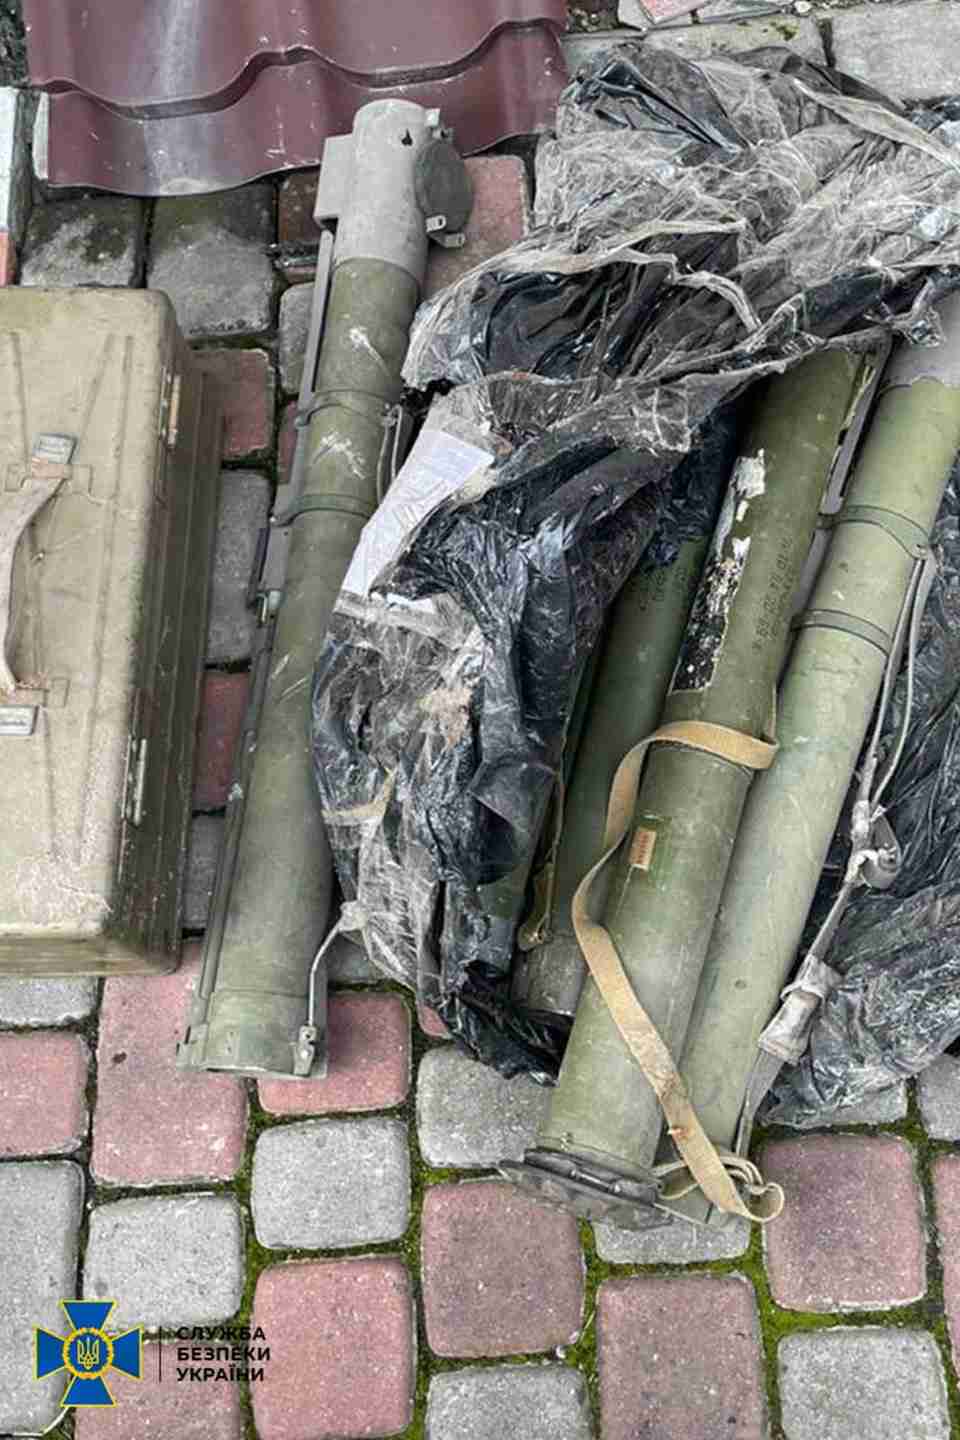 Гранатомет, міни, автомати та гранати: на Львівщині виявили схрон зі зброєю та боєприпасами (ФОТО)